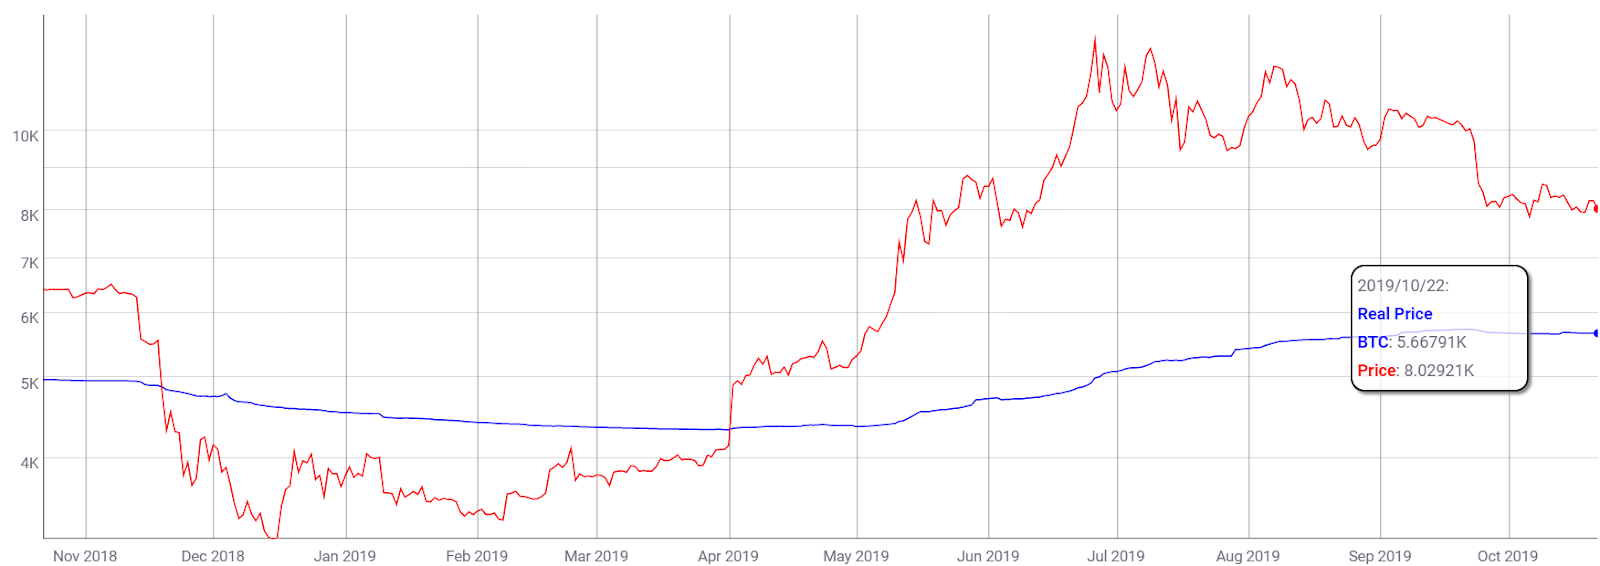 Coin Metrics的真实价格/市场价格K线走势图